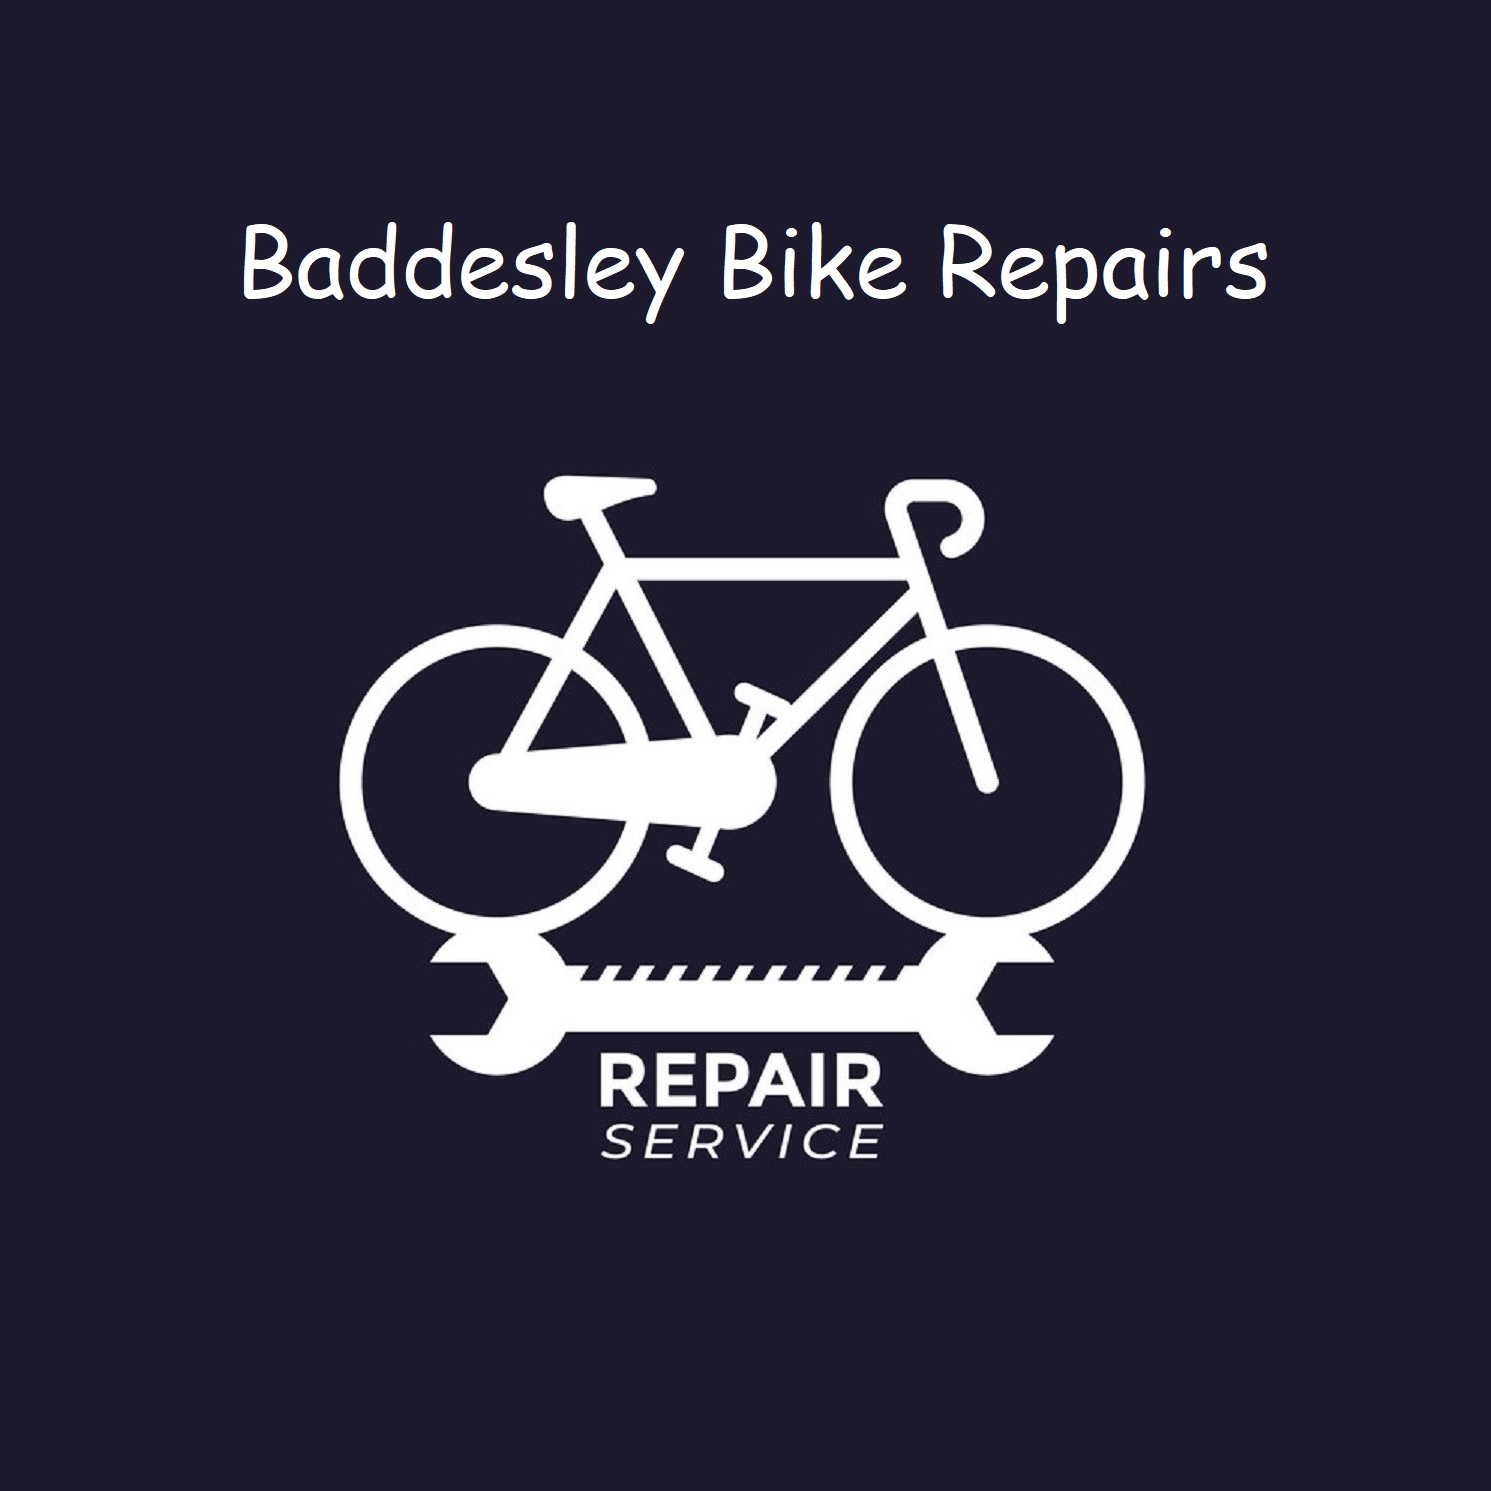 Baddesley Bike Repairs